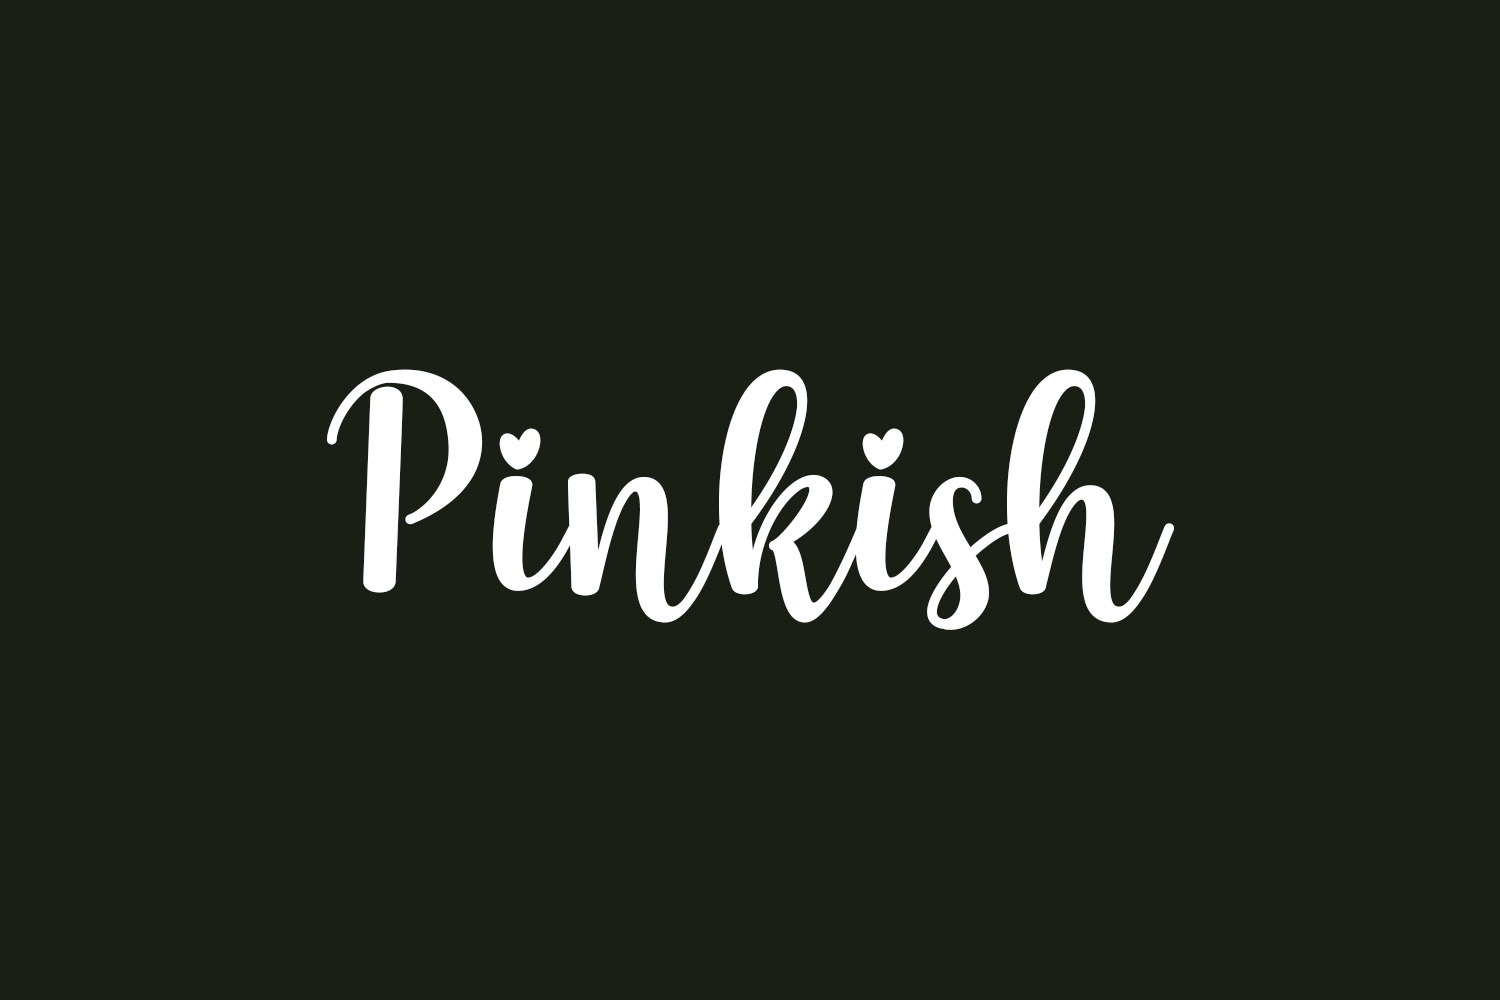 Pinkish Free Font